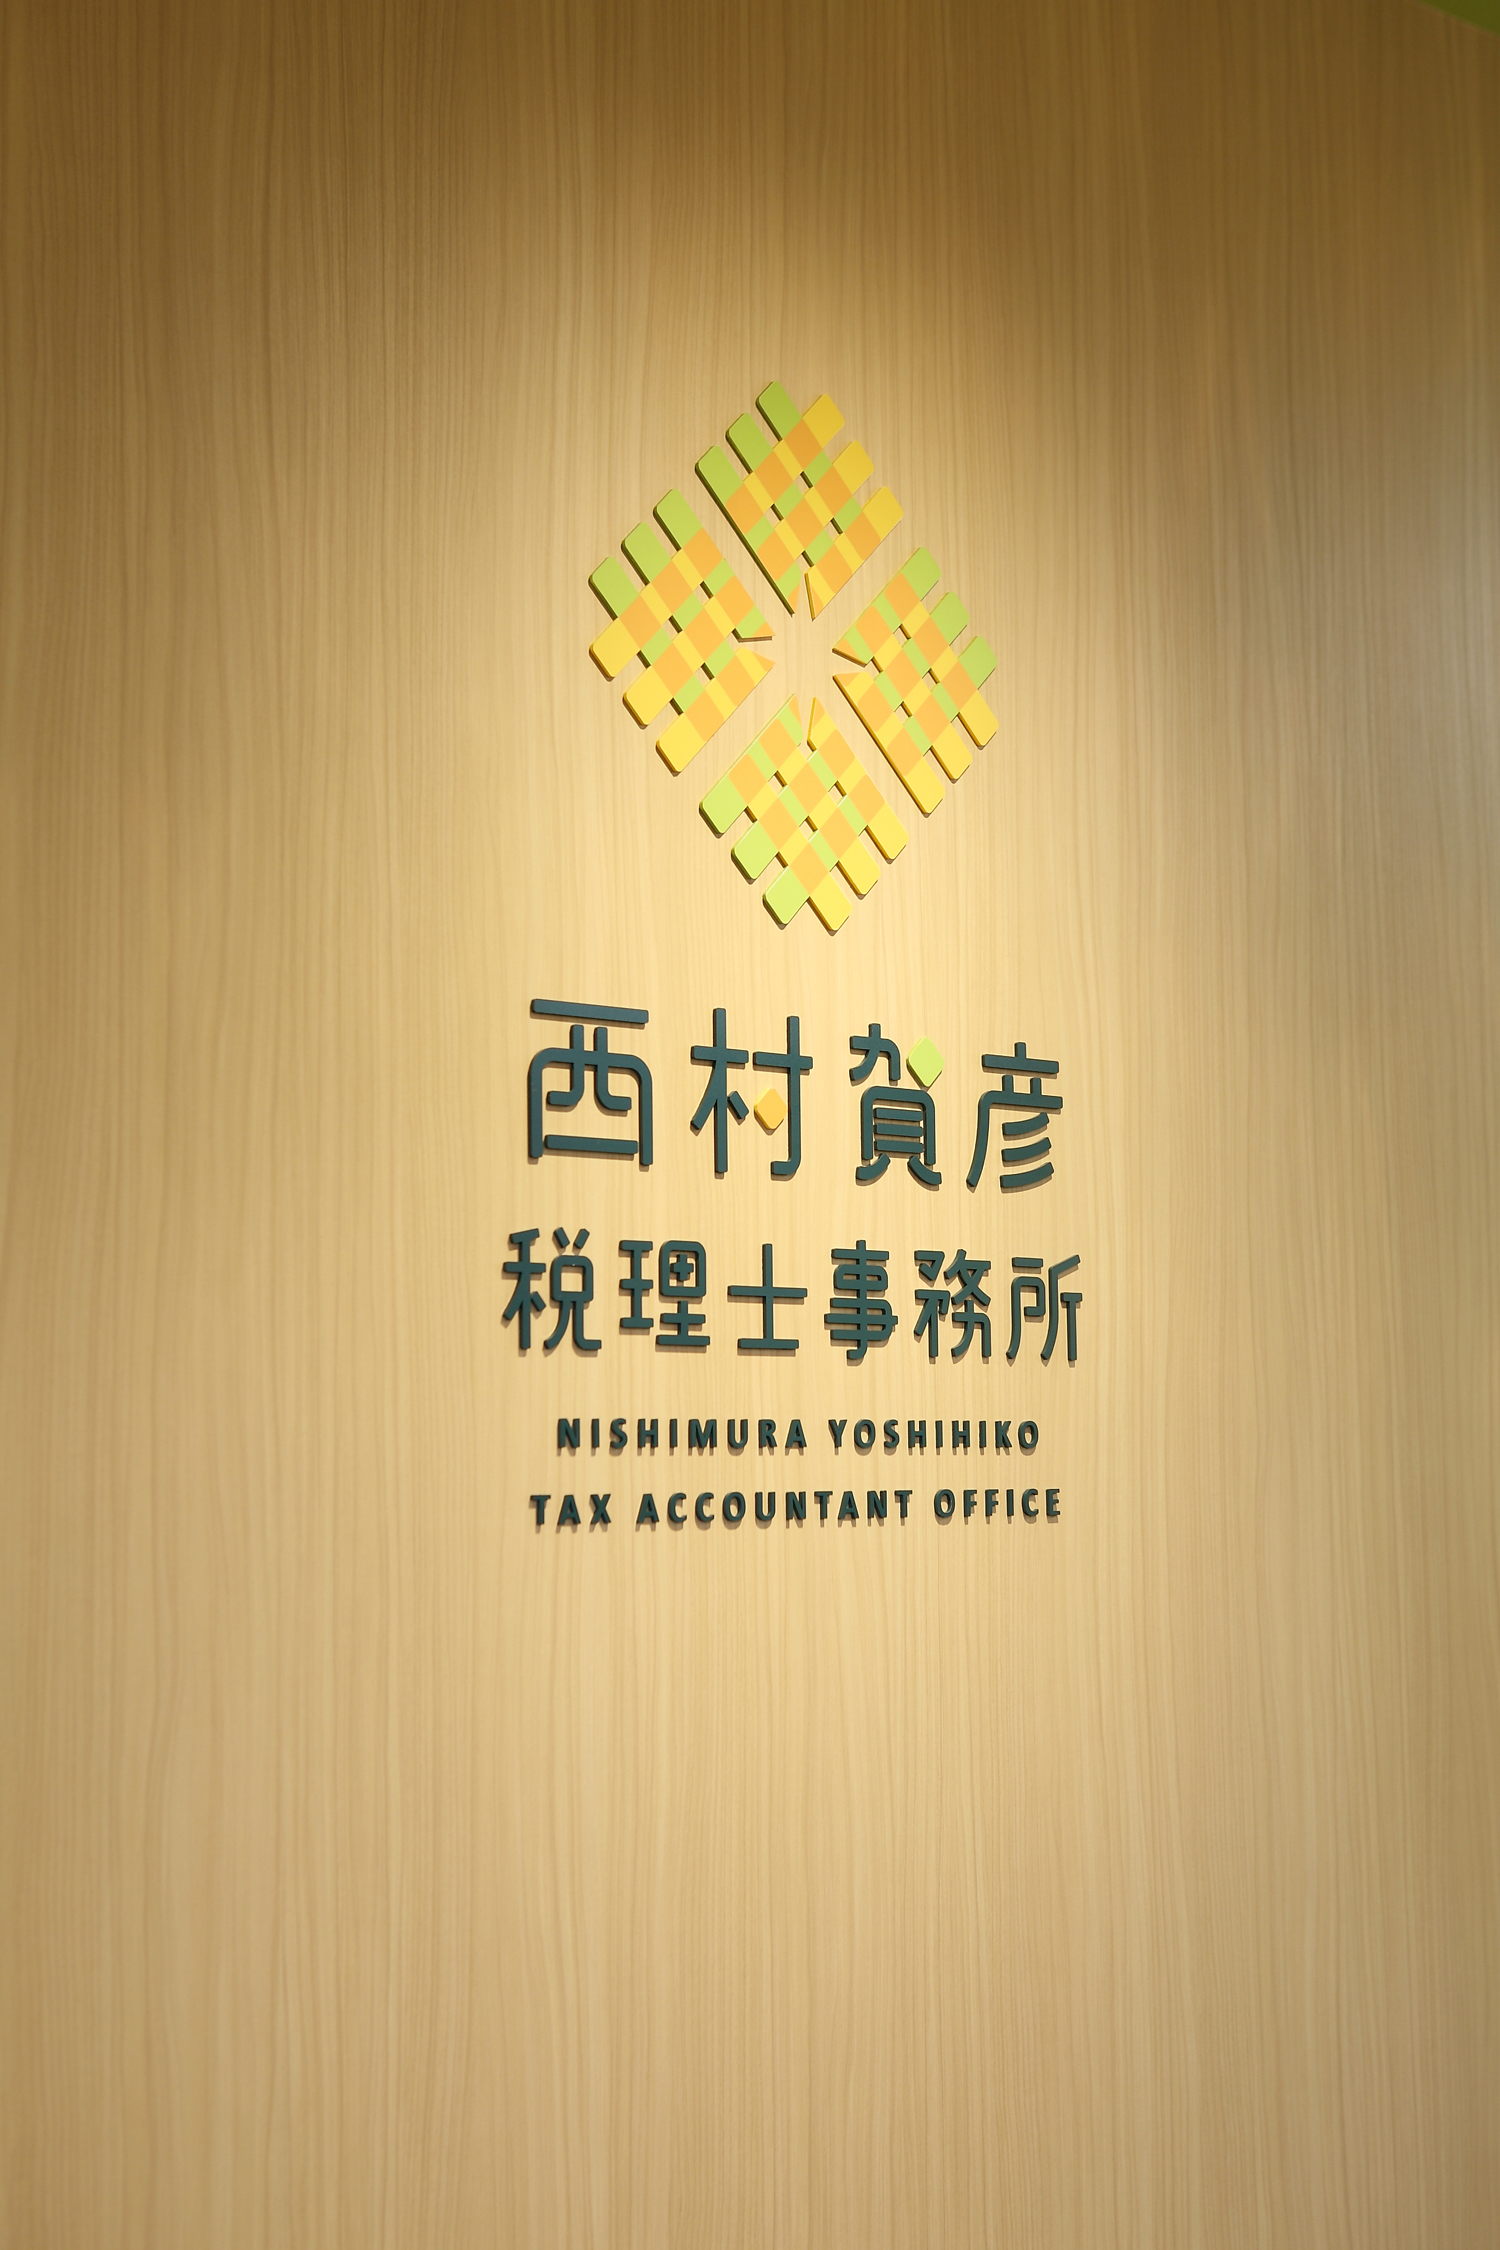 税理士事務所のオフィスデザイン